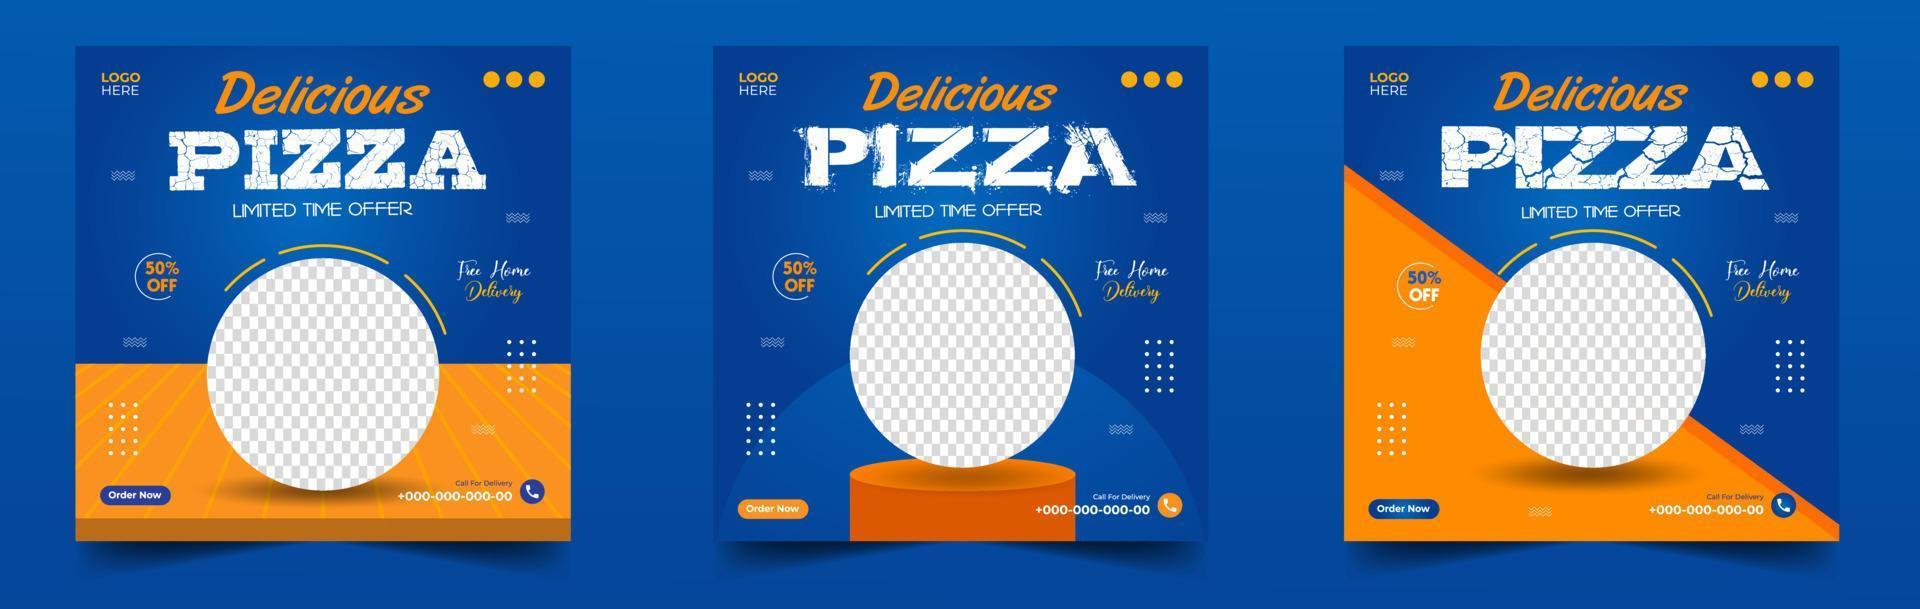 modelo de postagem de banner de mídia social de pizza. banner social de pizza, design de banner de pizza, modelo de mídia social de fast food para restaurante. mídia social de pizza poste design de banner com cor azul e laranja. vetor